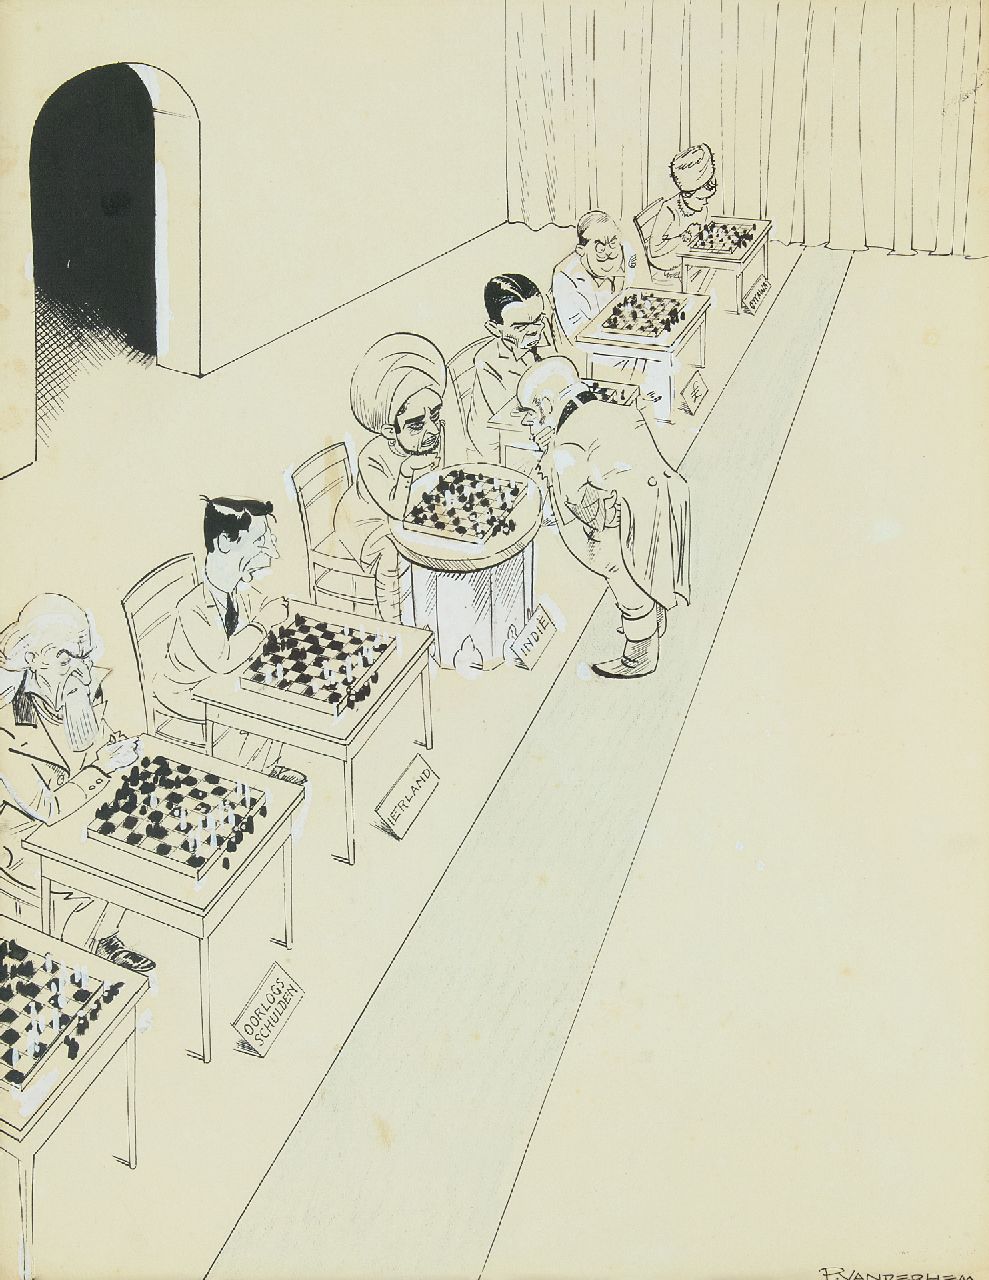 Hem P. van der | Pieter 'Piet' van der Hem | Aquarellen en tekeningen te koop aangeboden | John Bull als simultaan schaakspeler, pen en penseel, inkt en gouache op papier 45,0 x 35,5 cm, gesigneerd rechtsonder